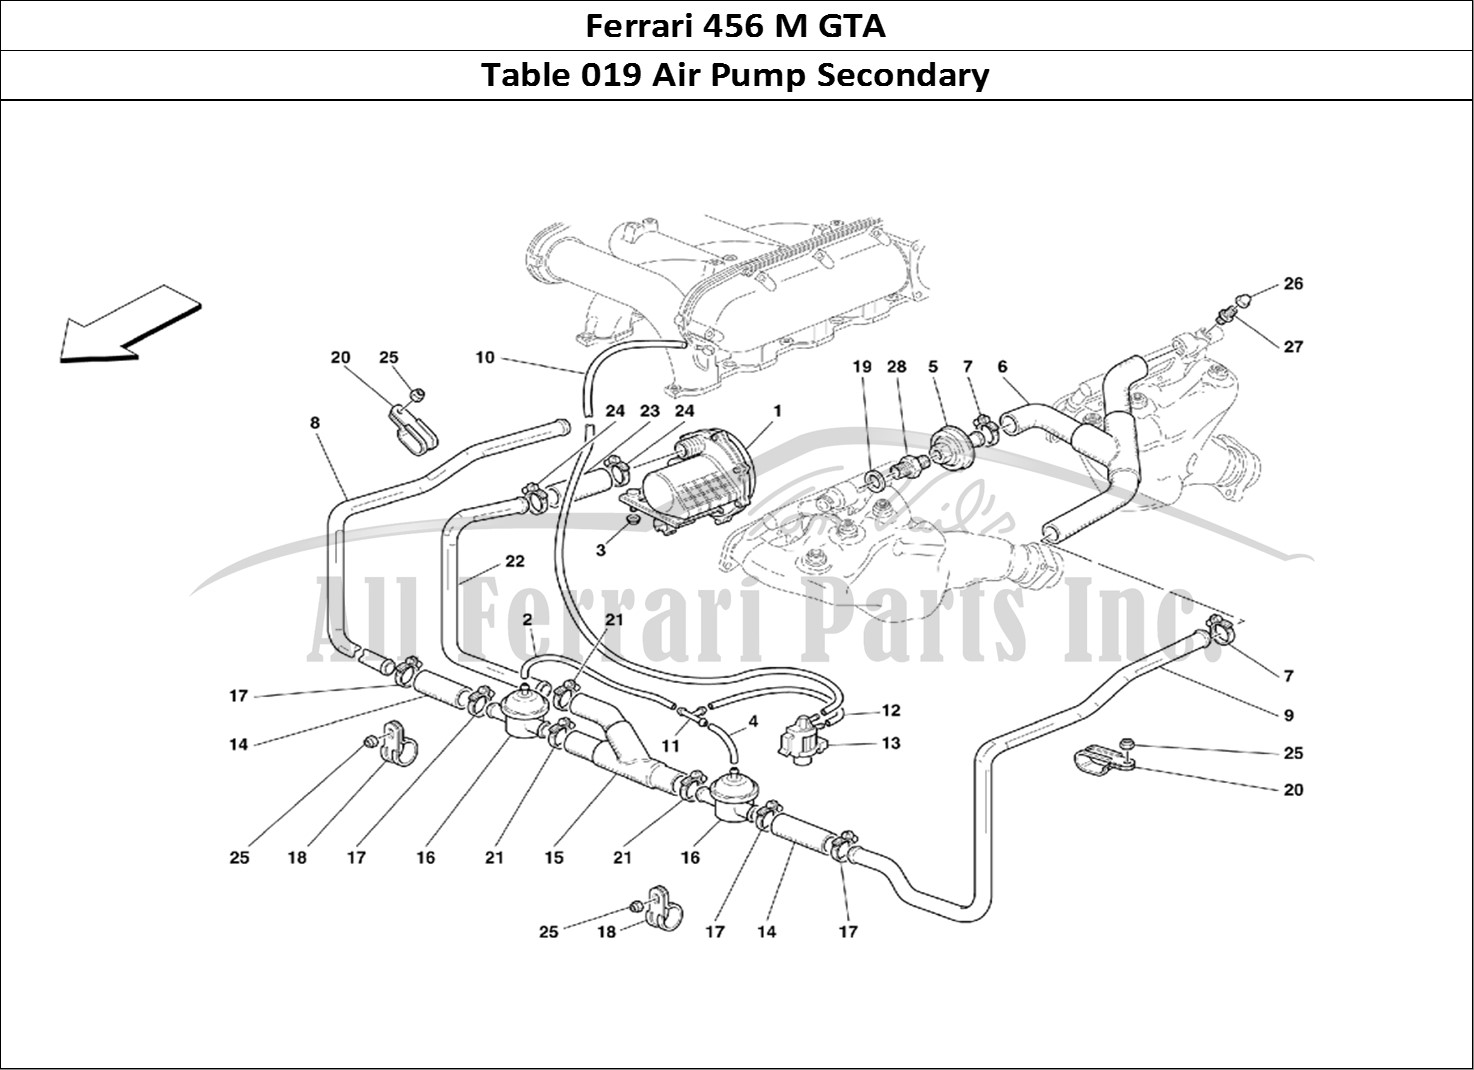 Ferrari Parts Ferrari 456 M GT Page 019 Secondary Air Pump